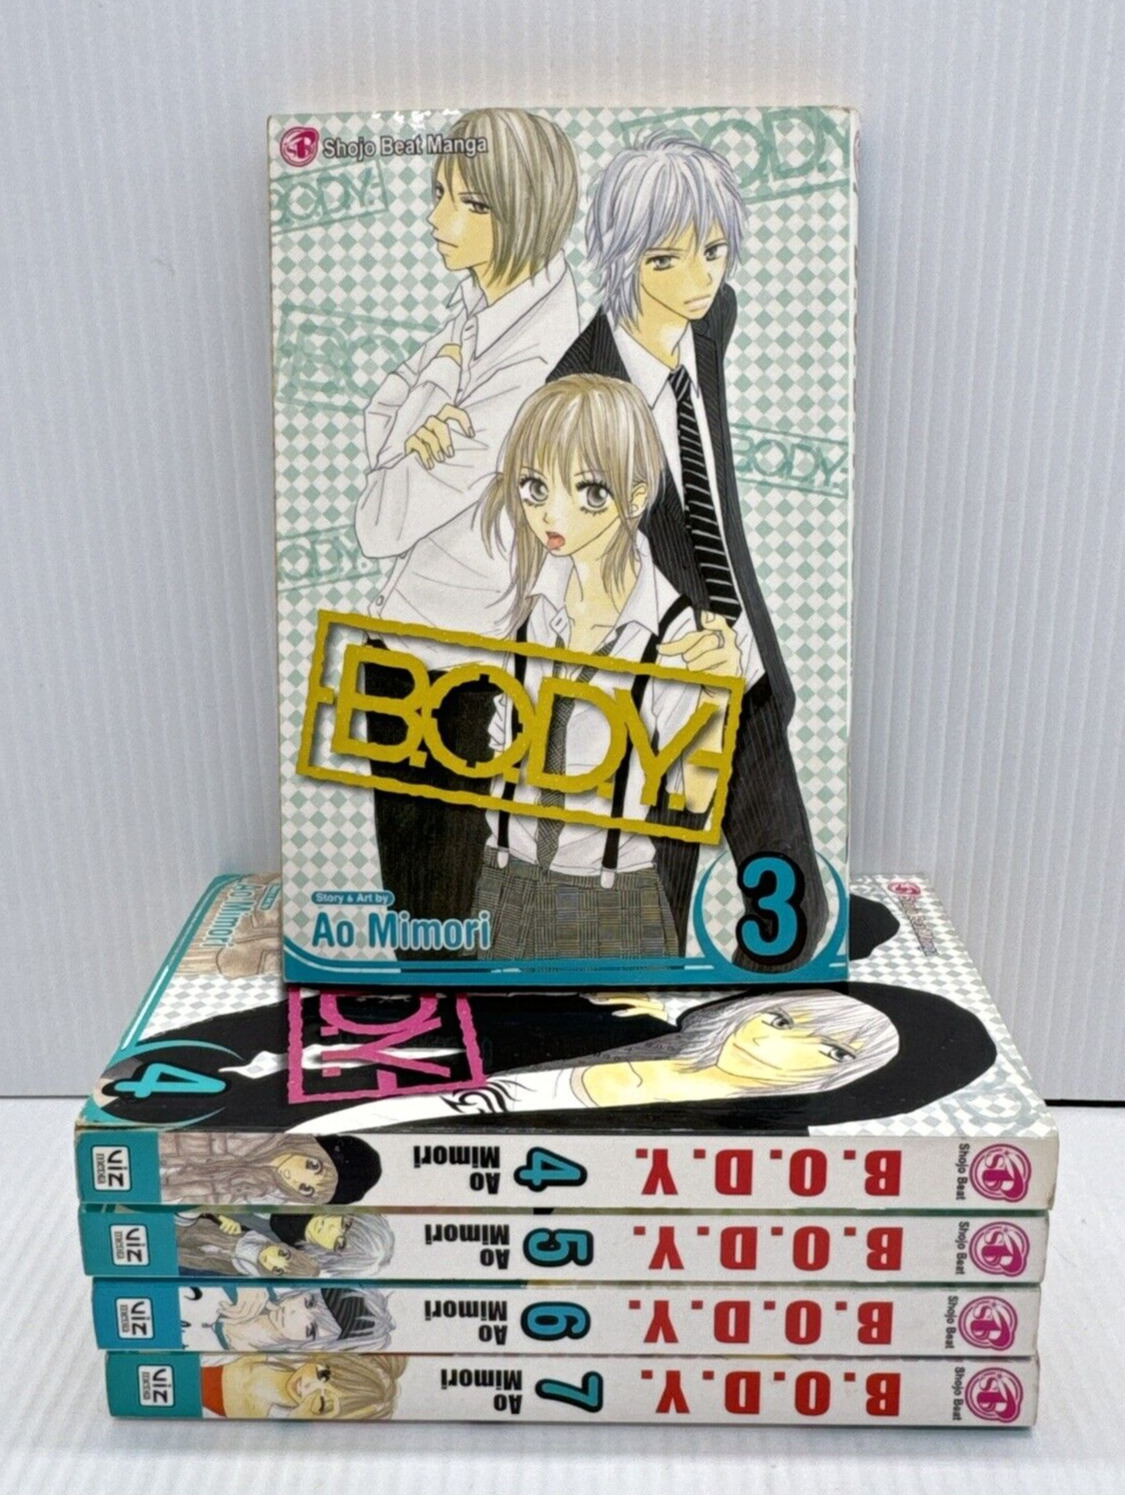 B.O.D.Y. (BODY) Vol. 3 - 7 English Shojo Beat Manga Book Lot Ao Mimori Viz Media